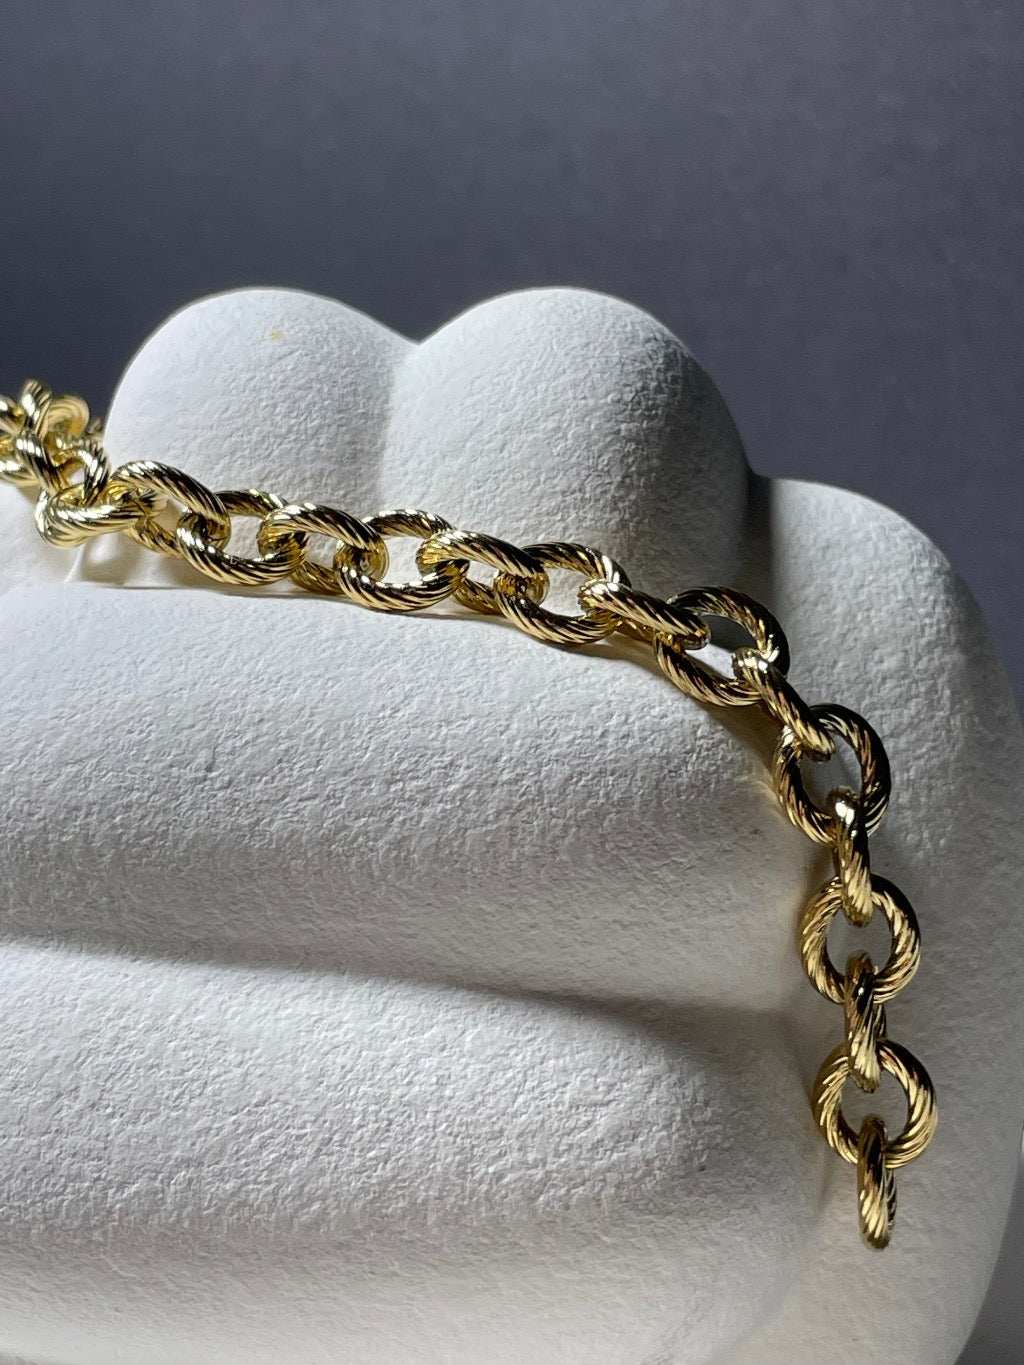 Edelstahl gold plattiertes Armband mit großen Gliedern.